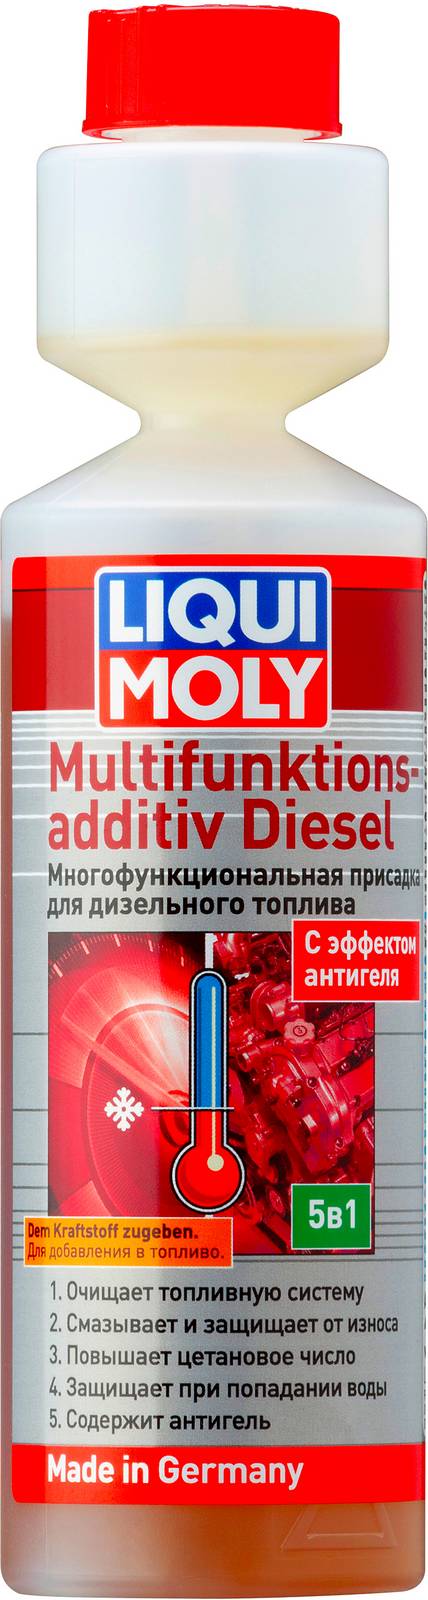 39024 Liqui Moly Многофункциональная присадка для дизельного топлива Multifunktionsadditiv Diesel 0,25л